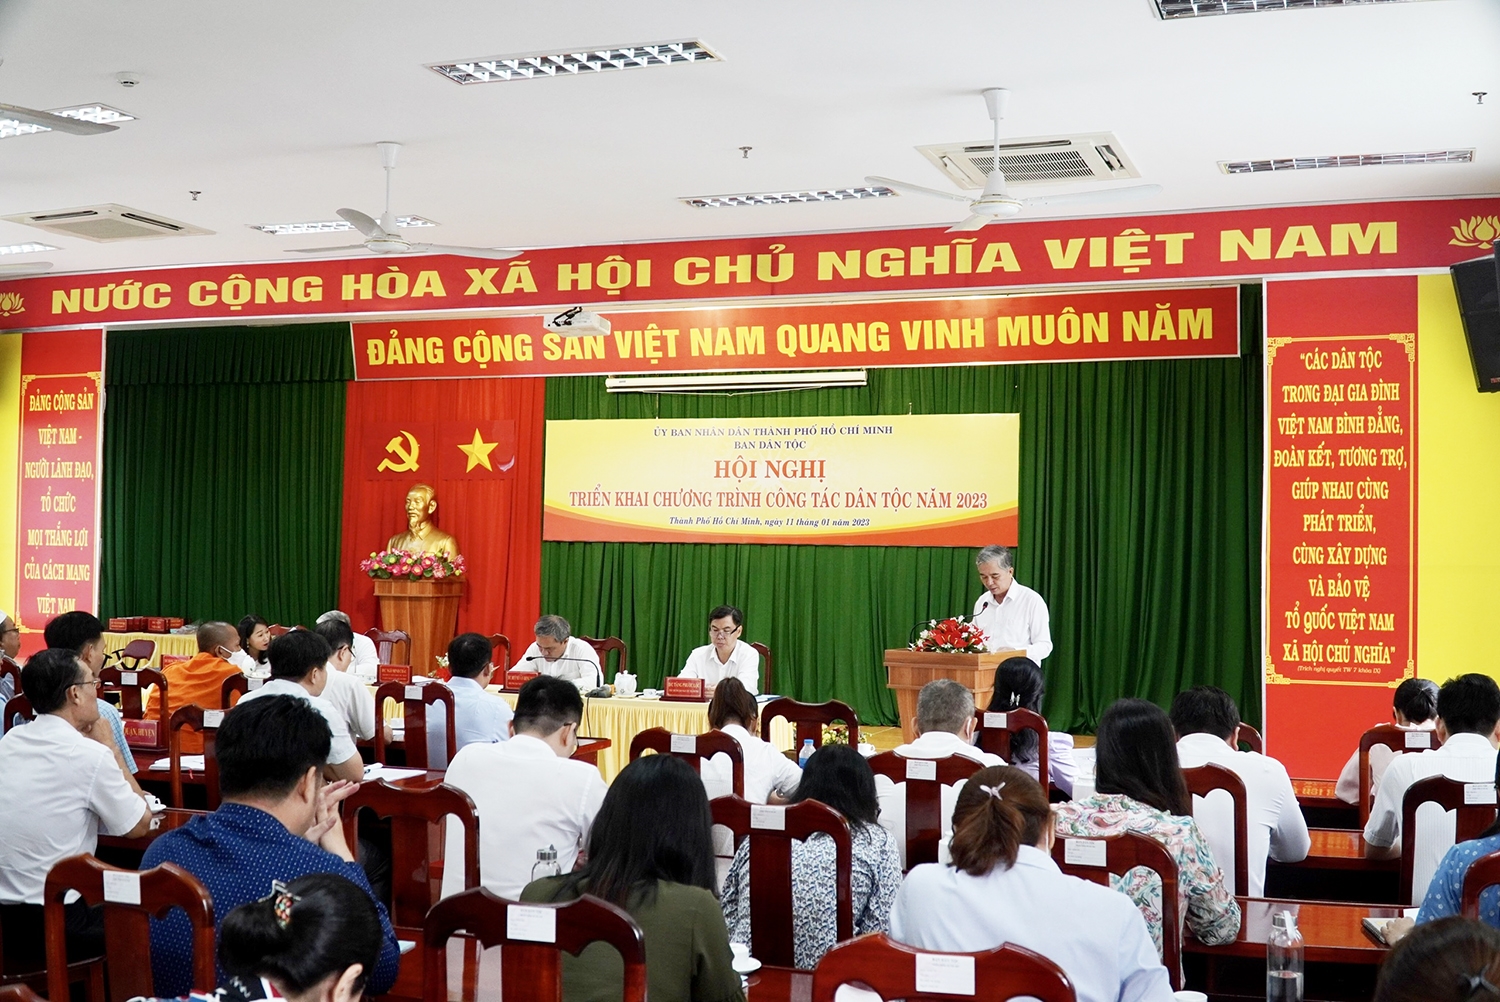 Đại diện Ban Dân tộc TP. Hồ Chí Minh báo cáo tình hình công tác Dân tộc trong năm 2022 và phương hướng hoạt động 2023